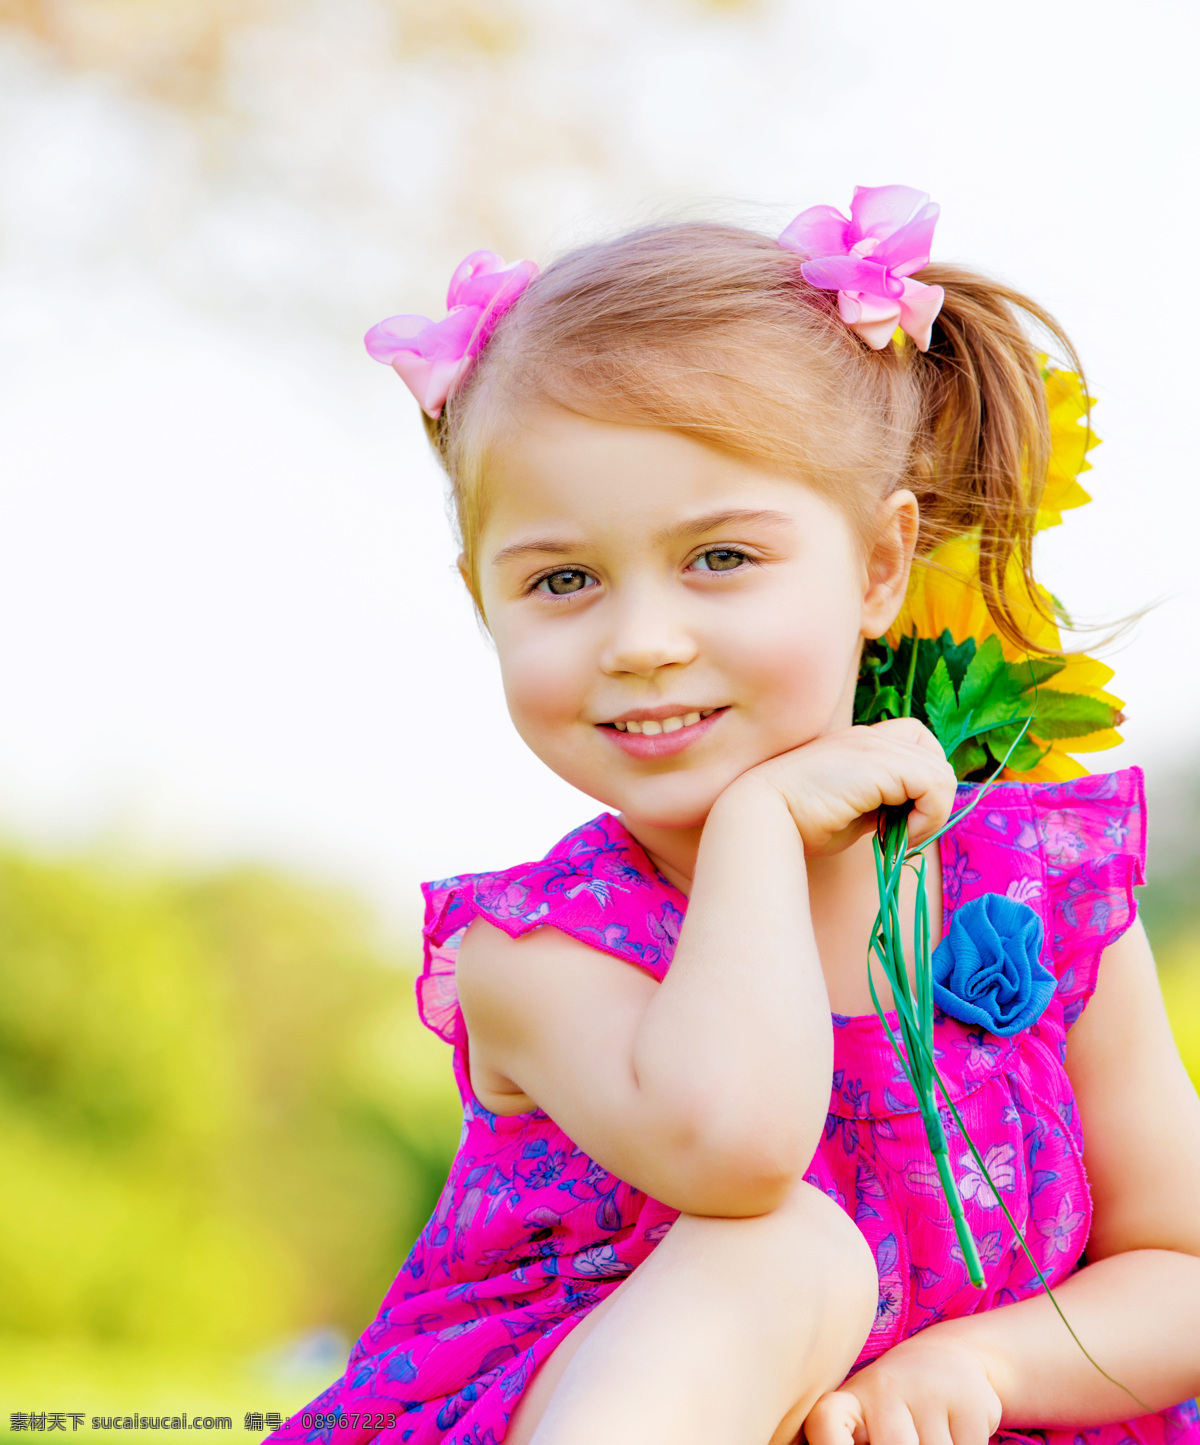 外国 小女孩 可爱女孩 鲜花 花朵 可爱儿童 外国儿童 小孩 儿童图片 人物图片